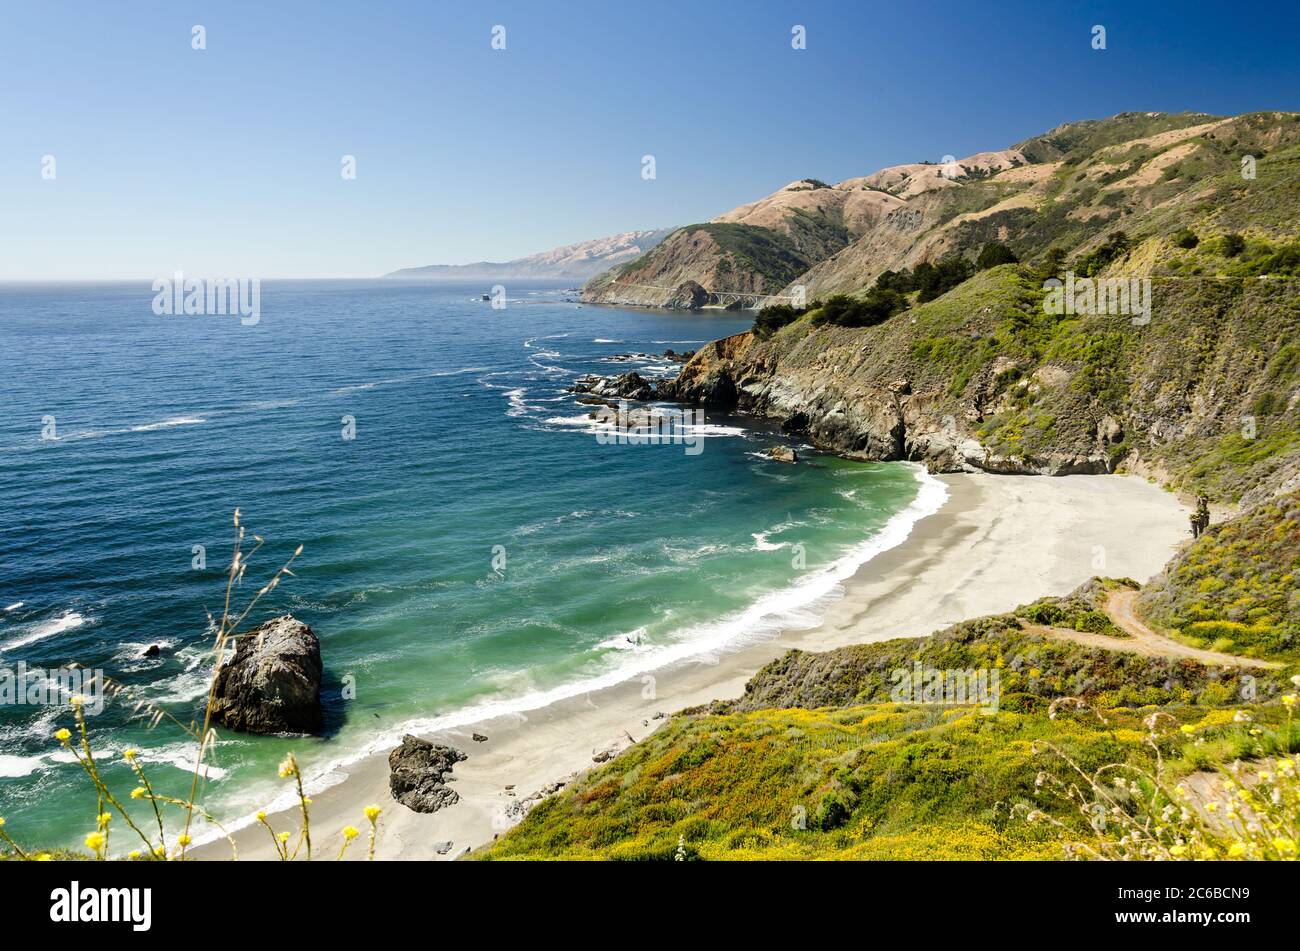 Vista mozzafiato di una splendida baia sull'Oceano Pacifico in California Foto Stock